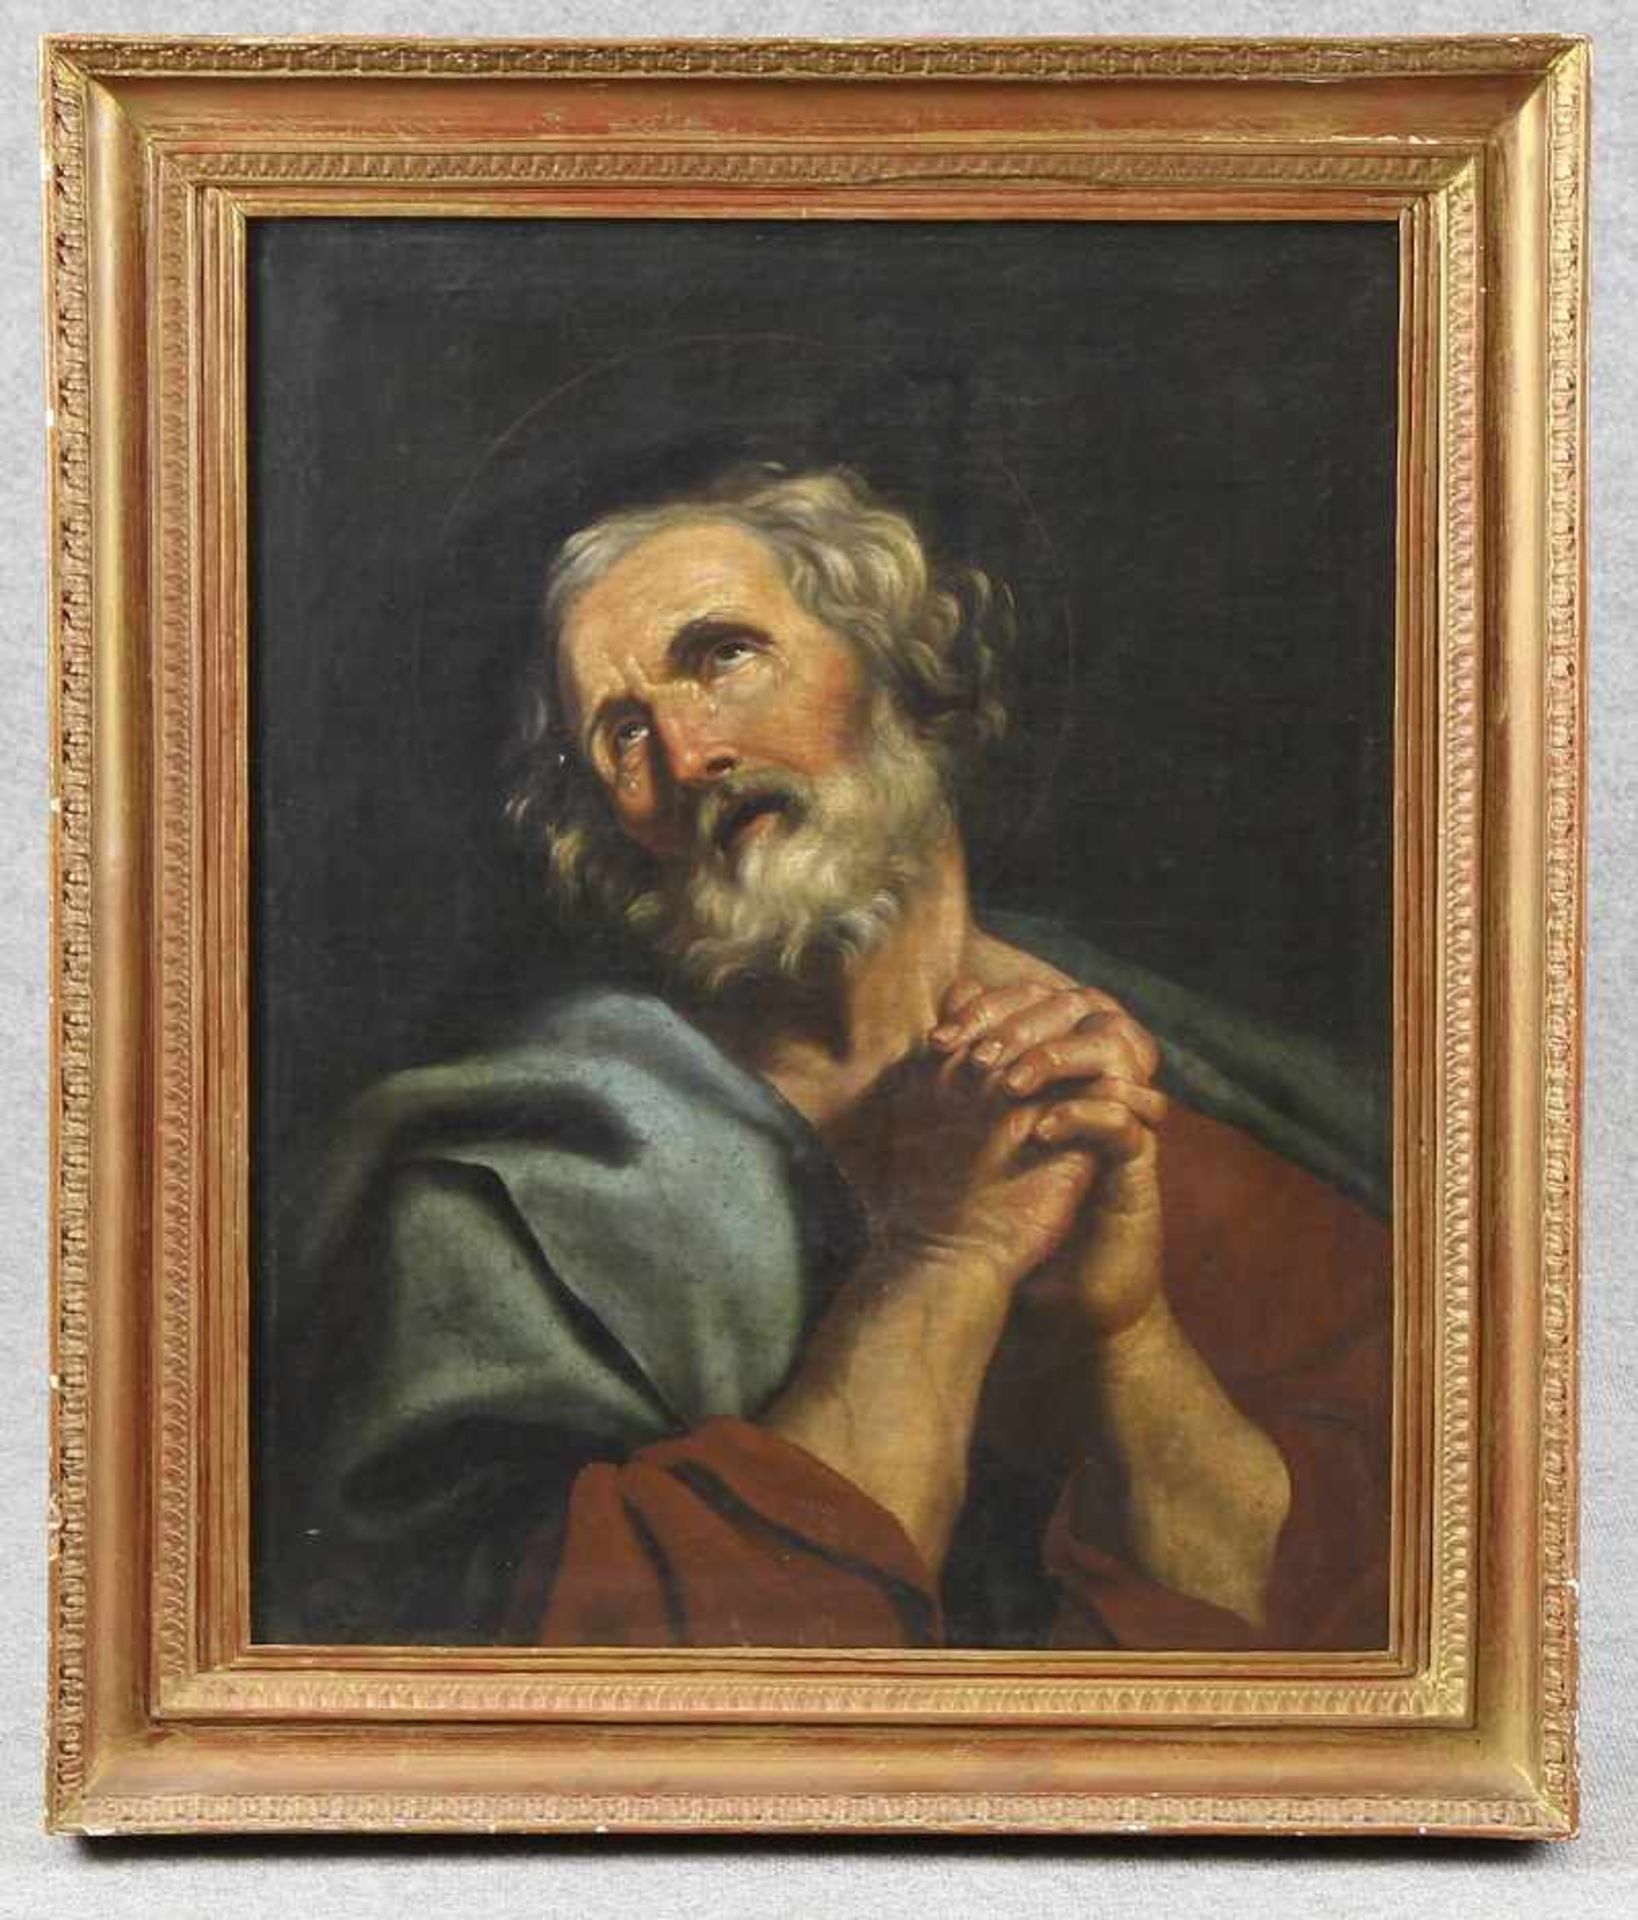 Bonati, Guiseppe (1635 - 1681, italienischer Maler, tätig in Rom und Ferrara) attr. oder Umkreis